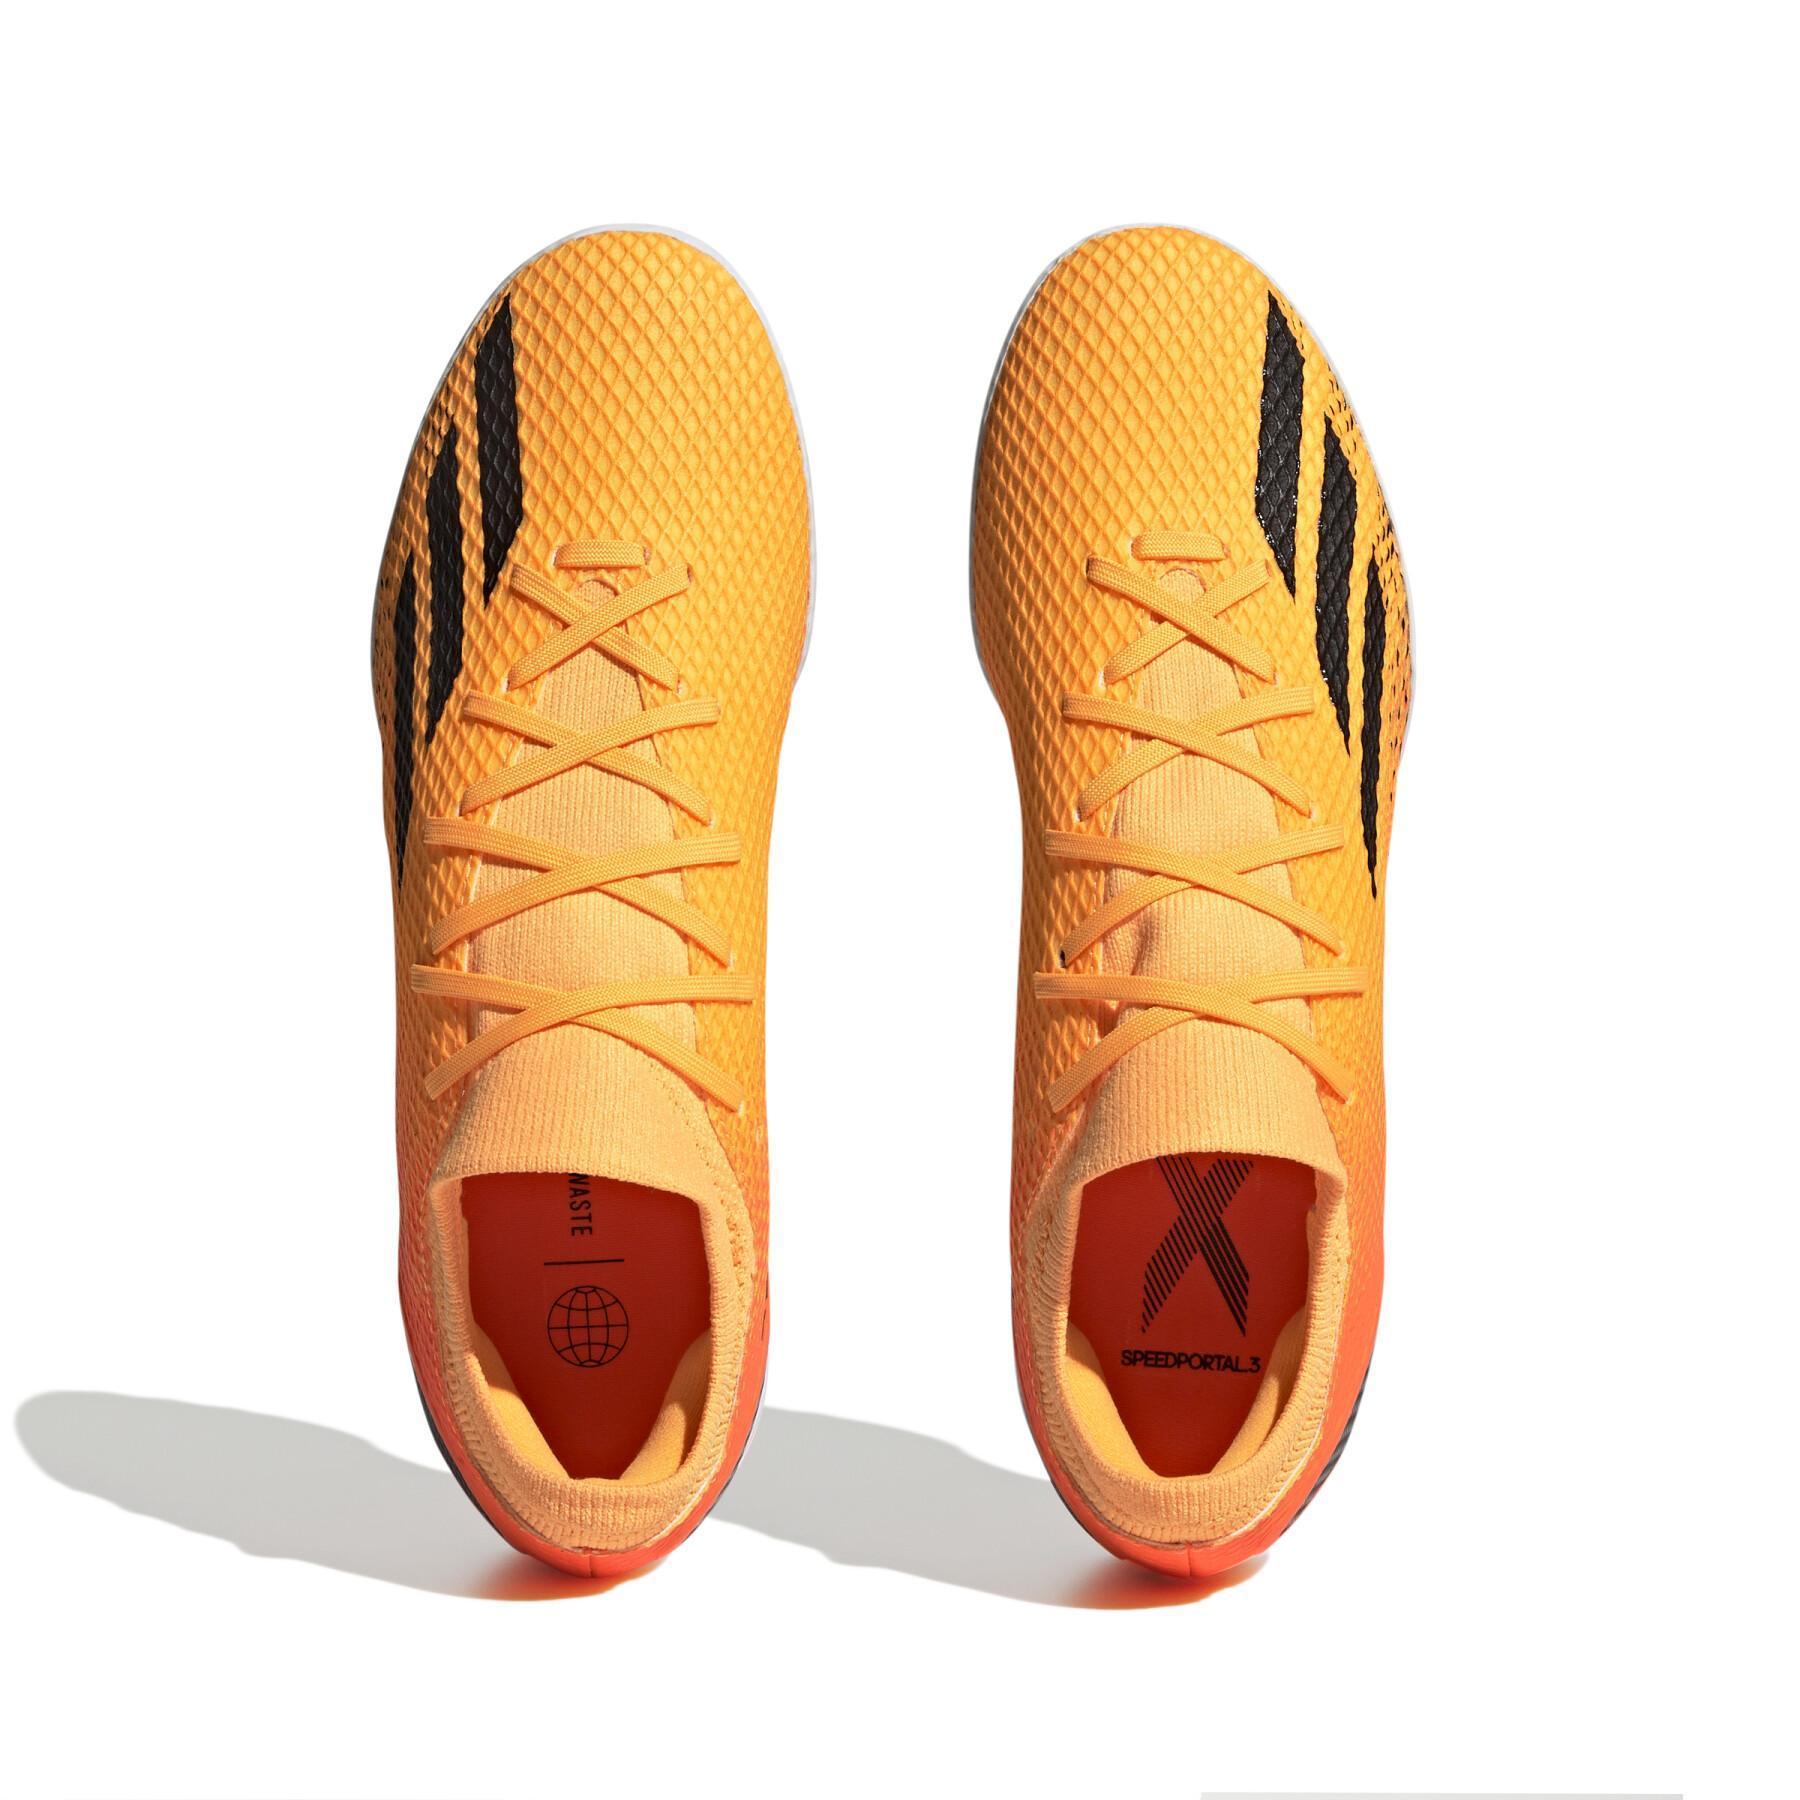 Botas de fútbol adidas X Speedportal.3 Tf Heatspawn Pack